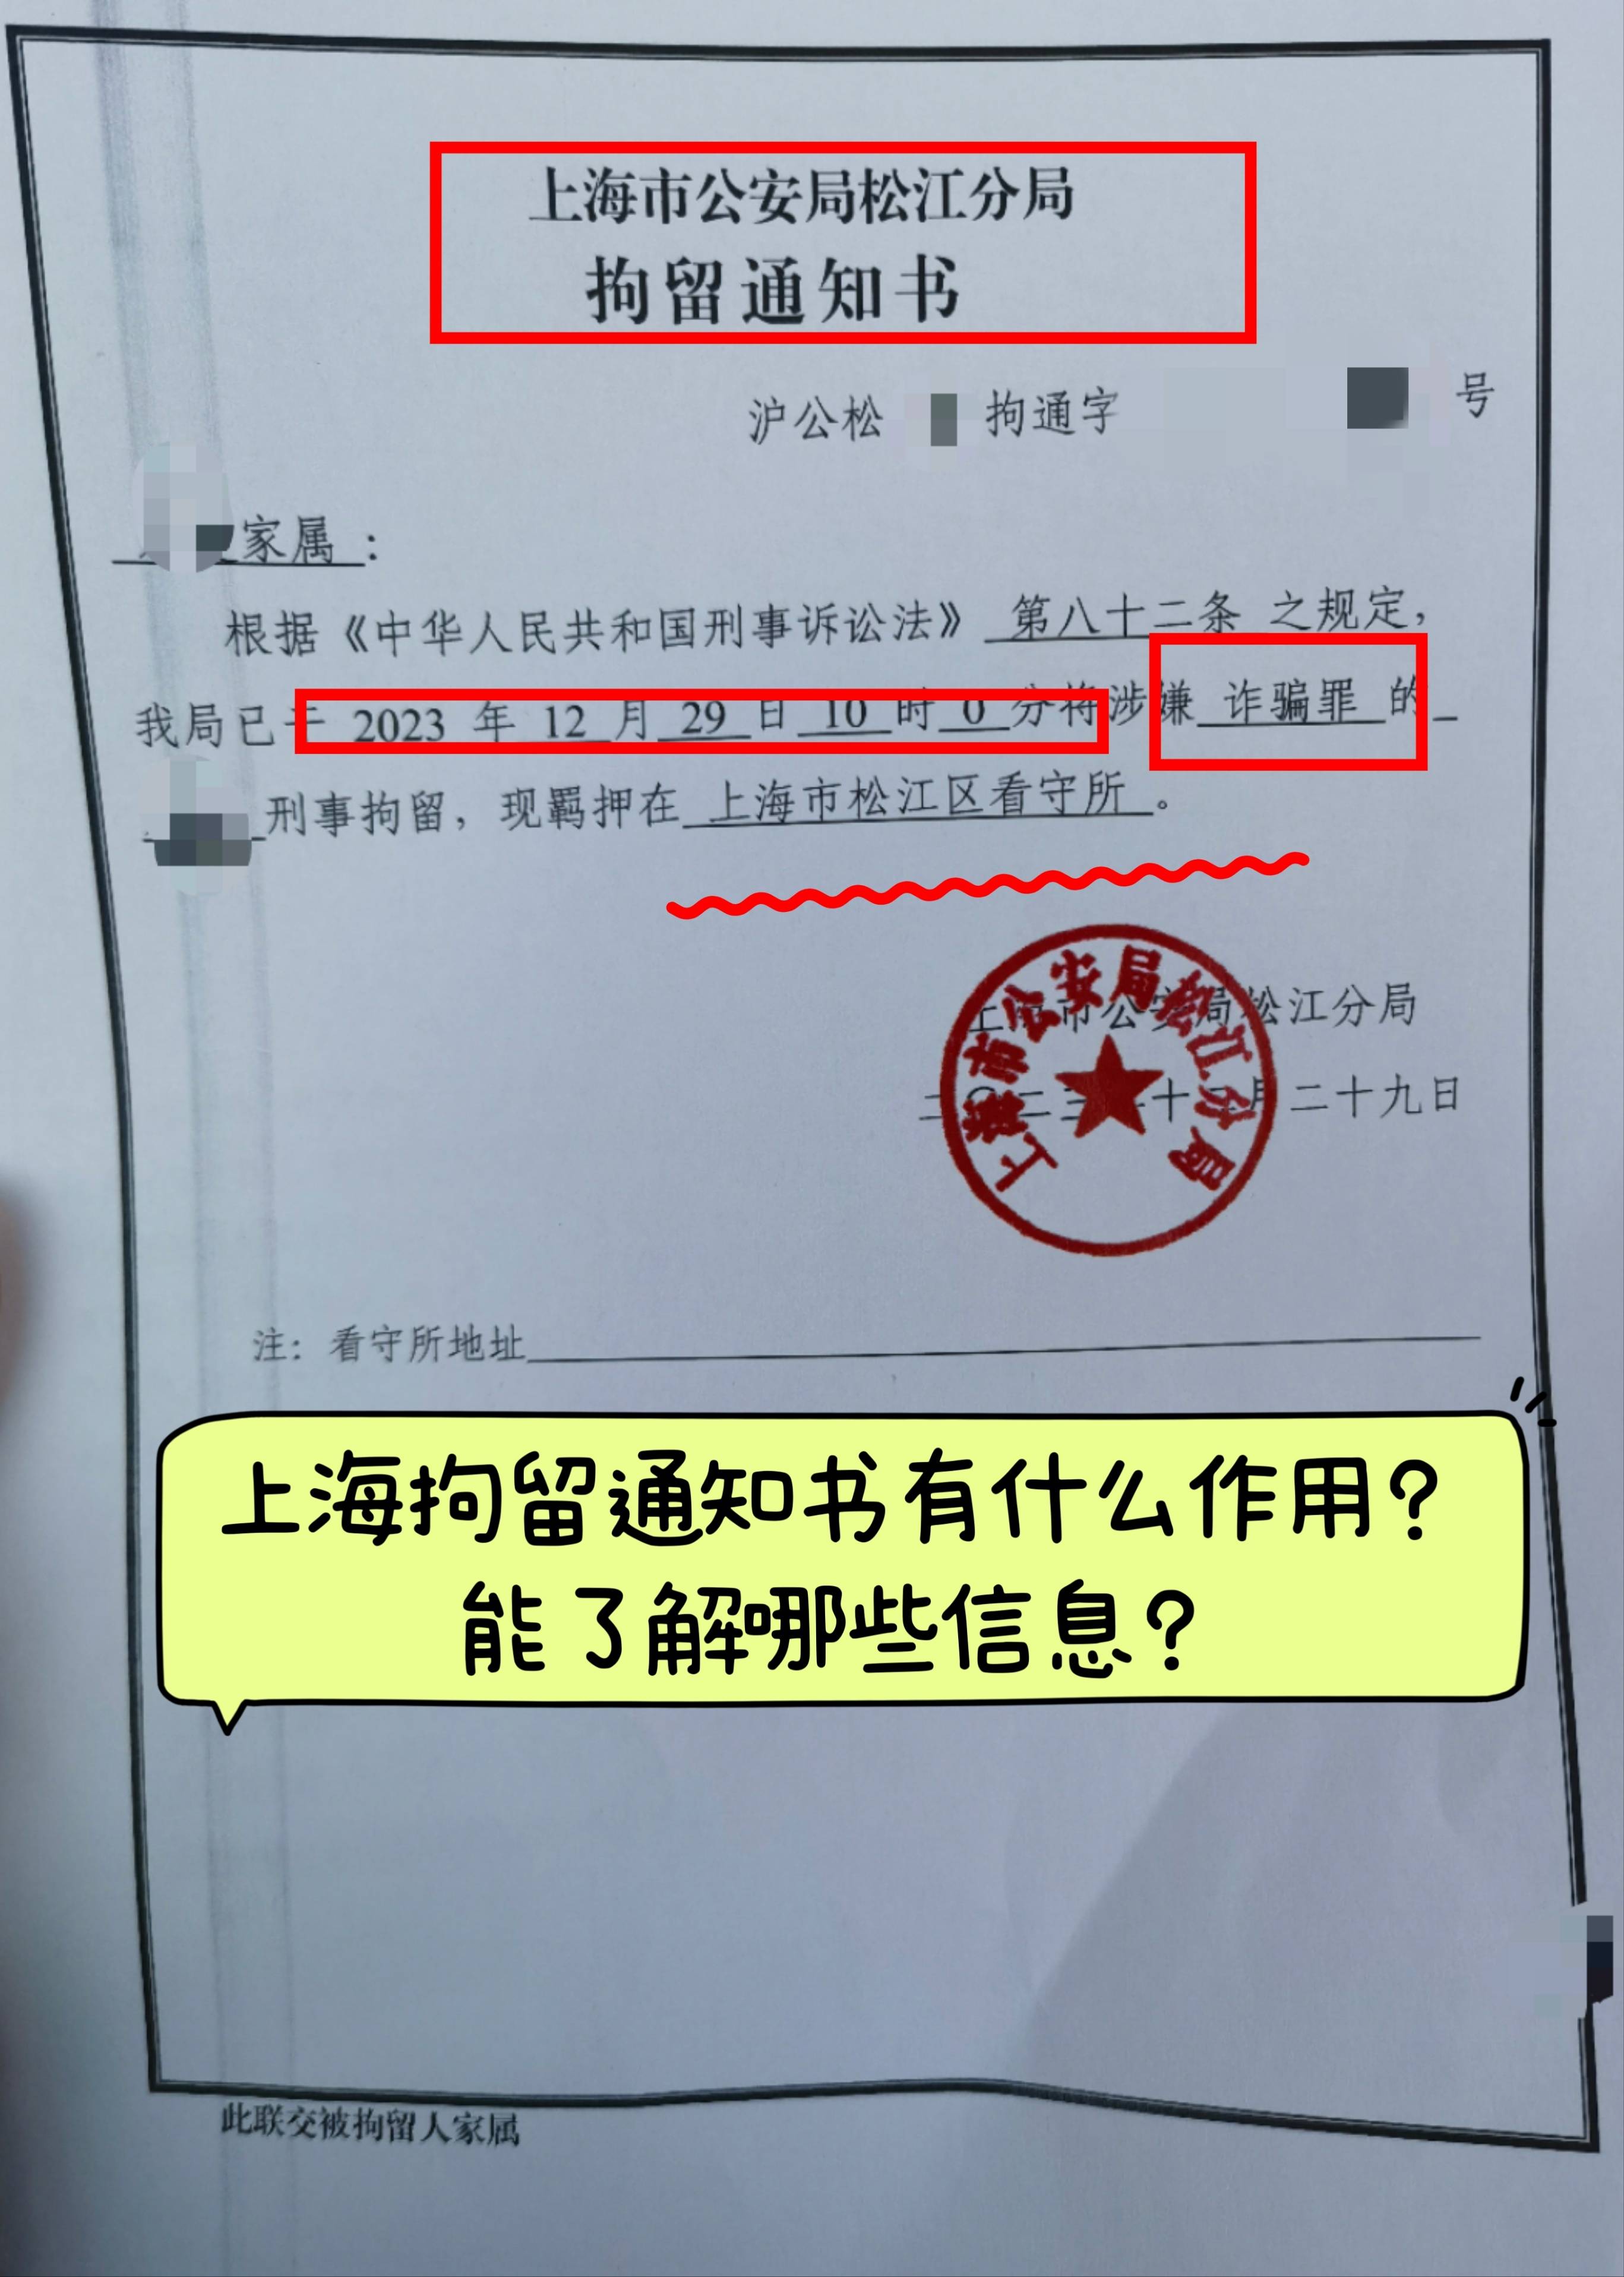 上海拘留通知书有什么用?能了解哪些信息?